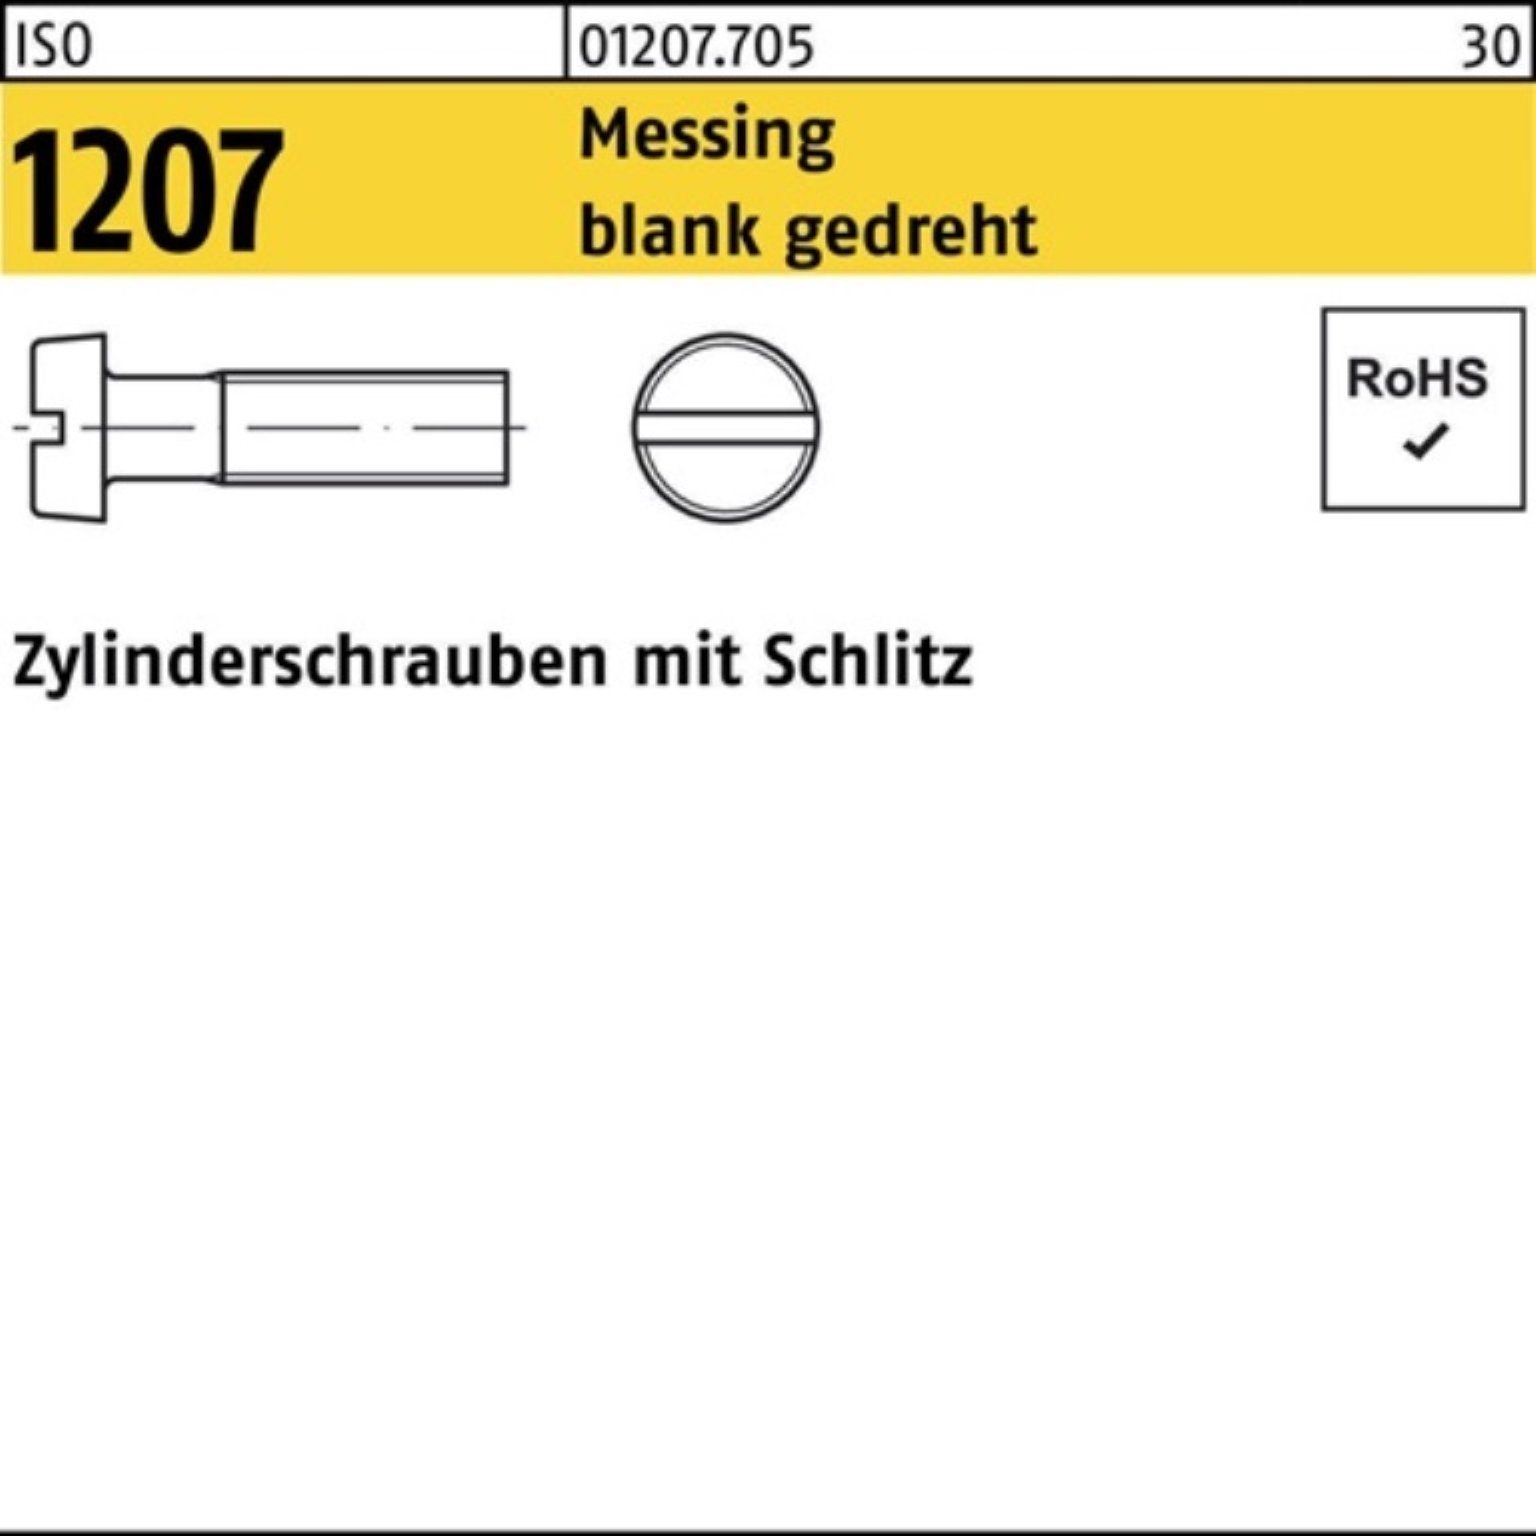 Zylinderschraube Pack 100er Zylinderschraube Schlitz ged 1207 6 ISO Messing blank Reyher M1,4x